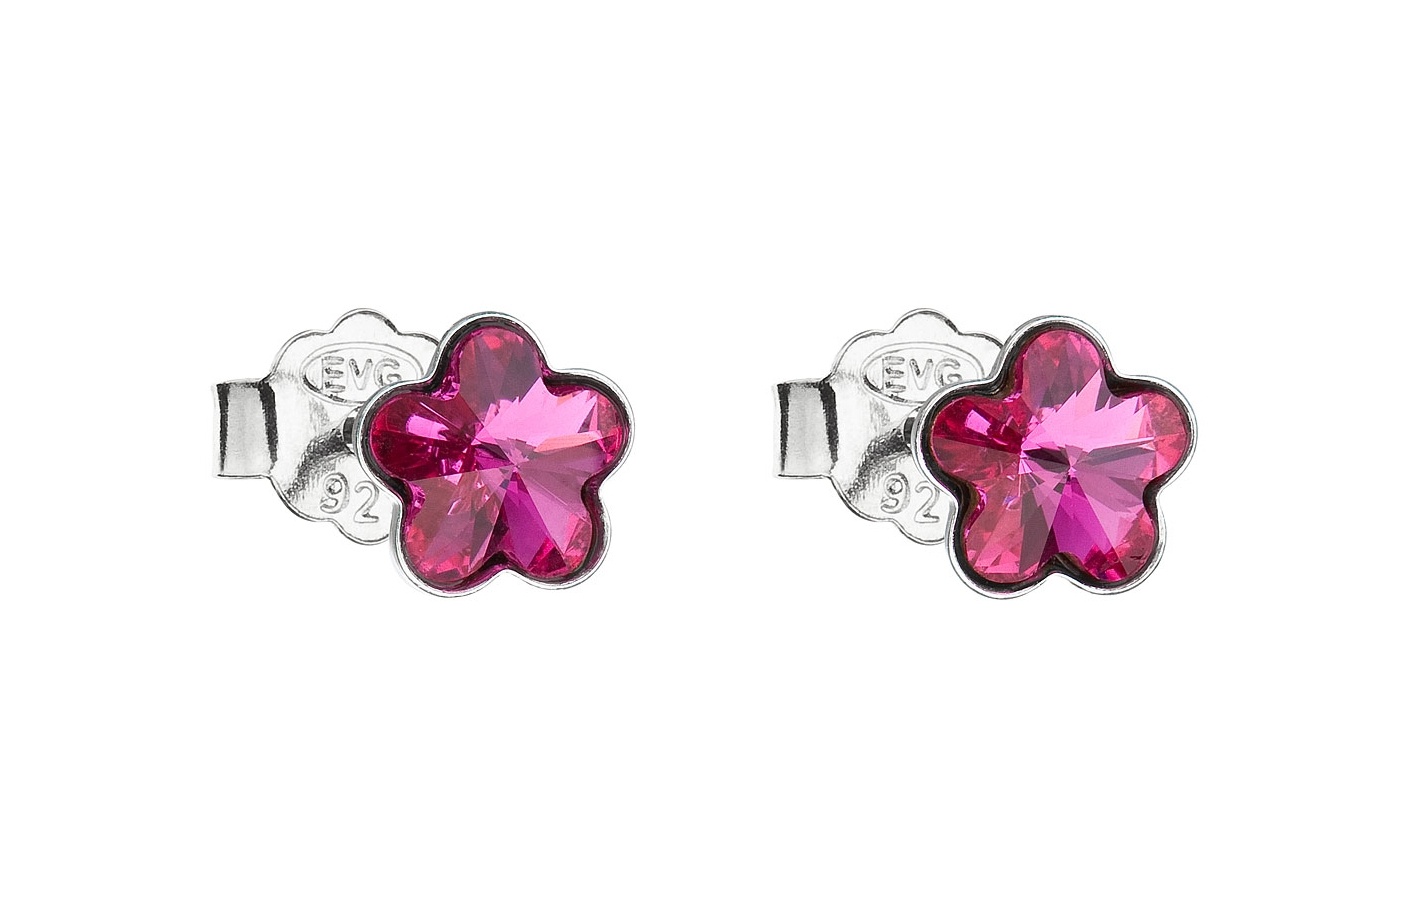 Dětské stříbrné náušnice s krystalem Swarovski - tmavě růžová kytička